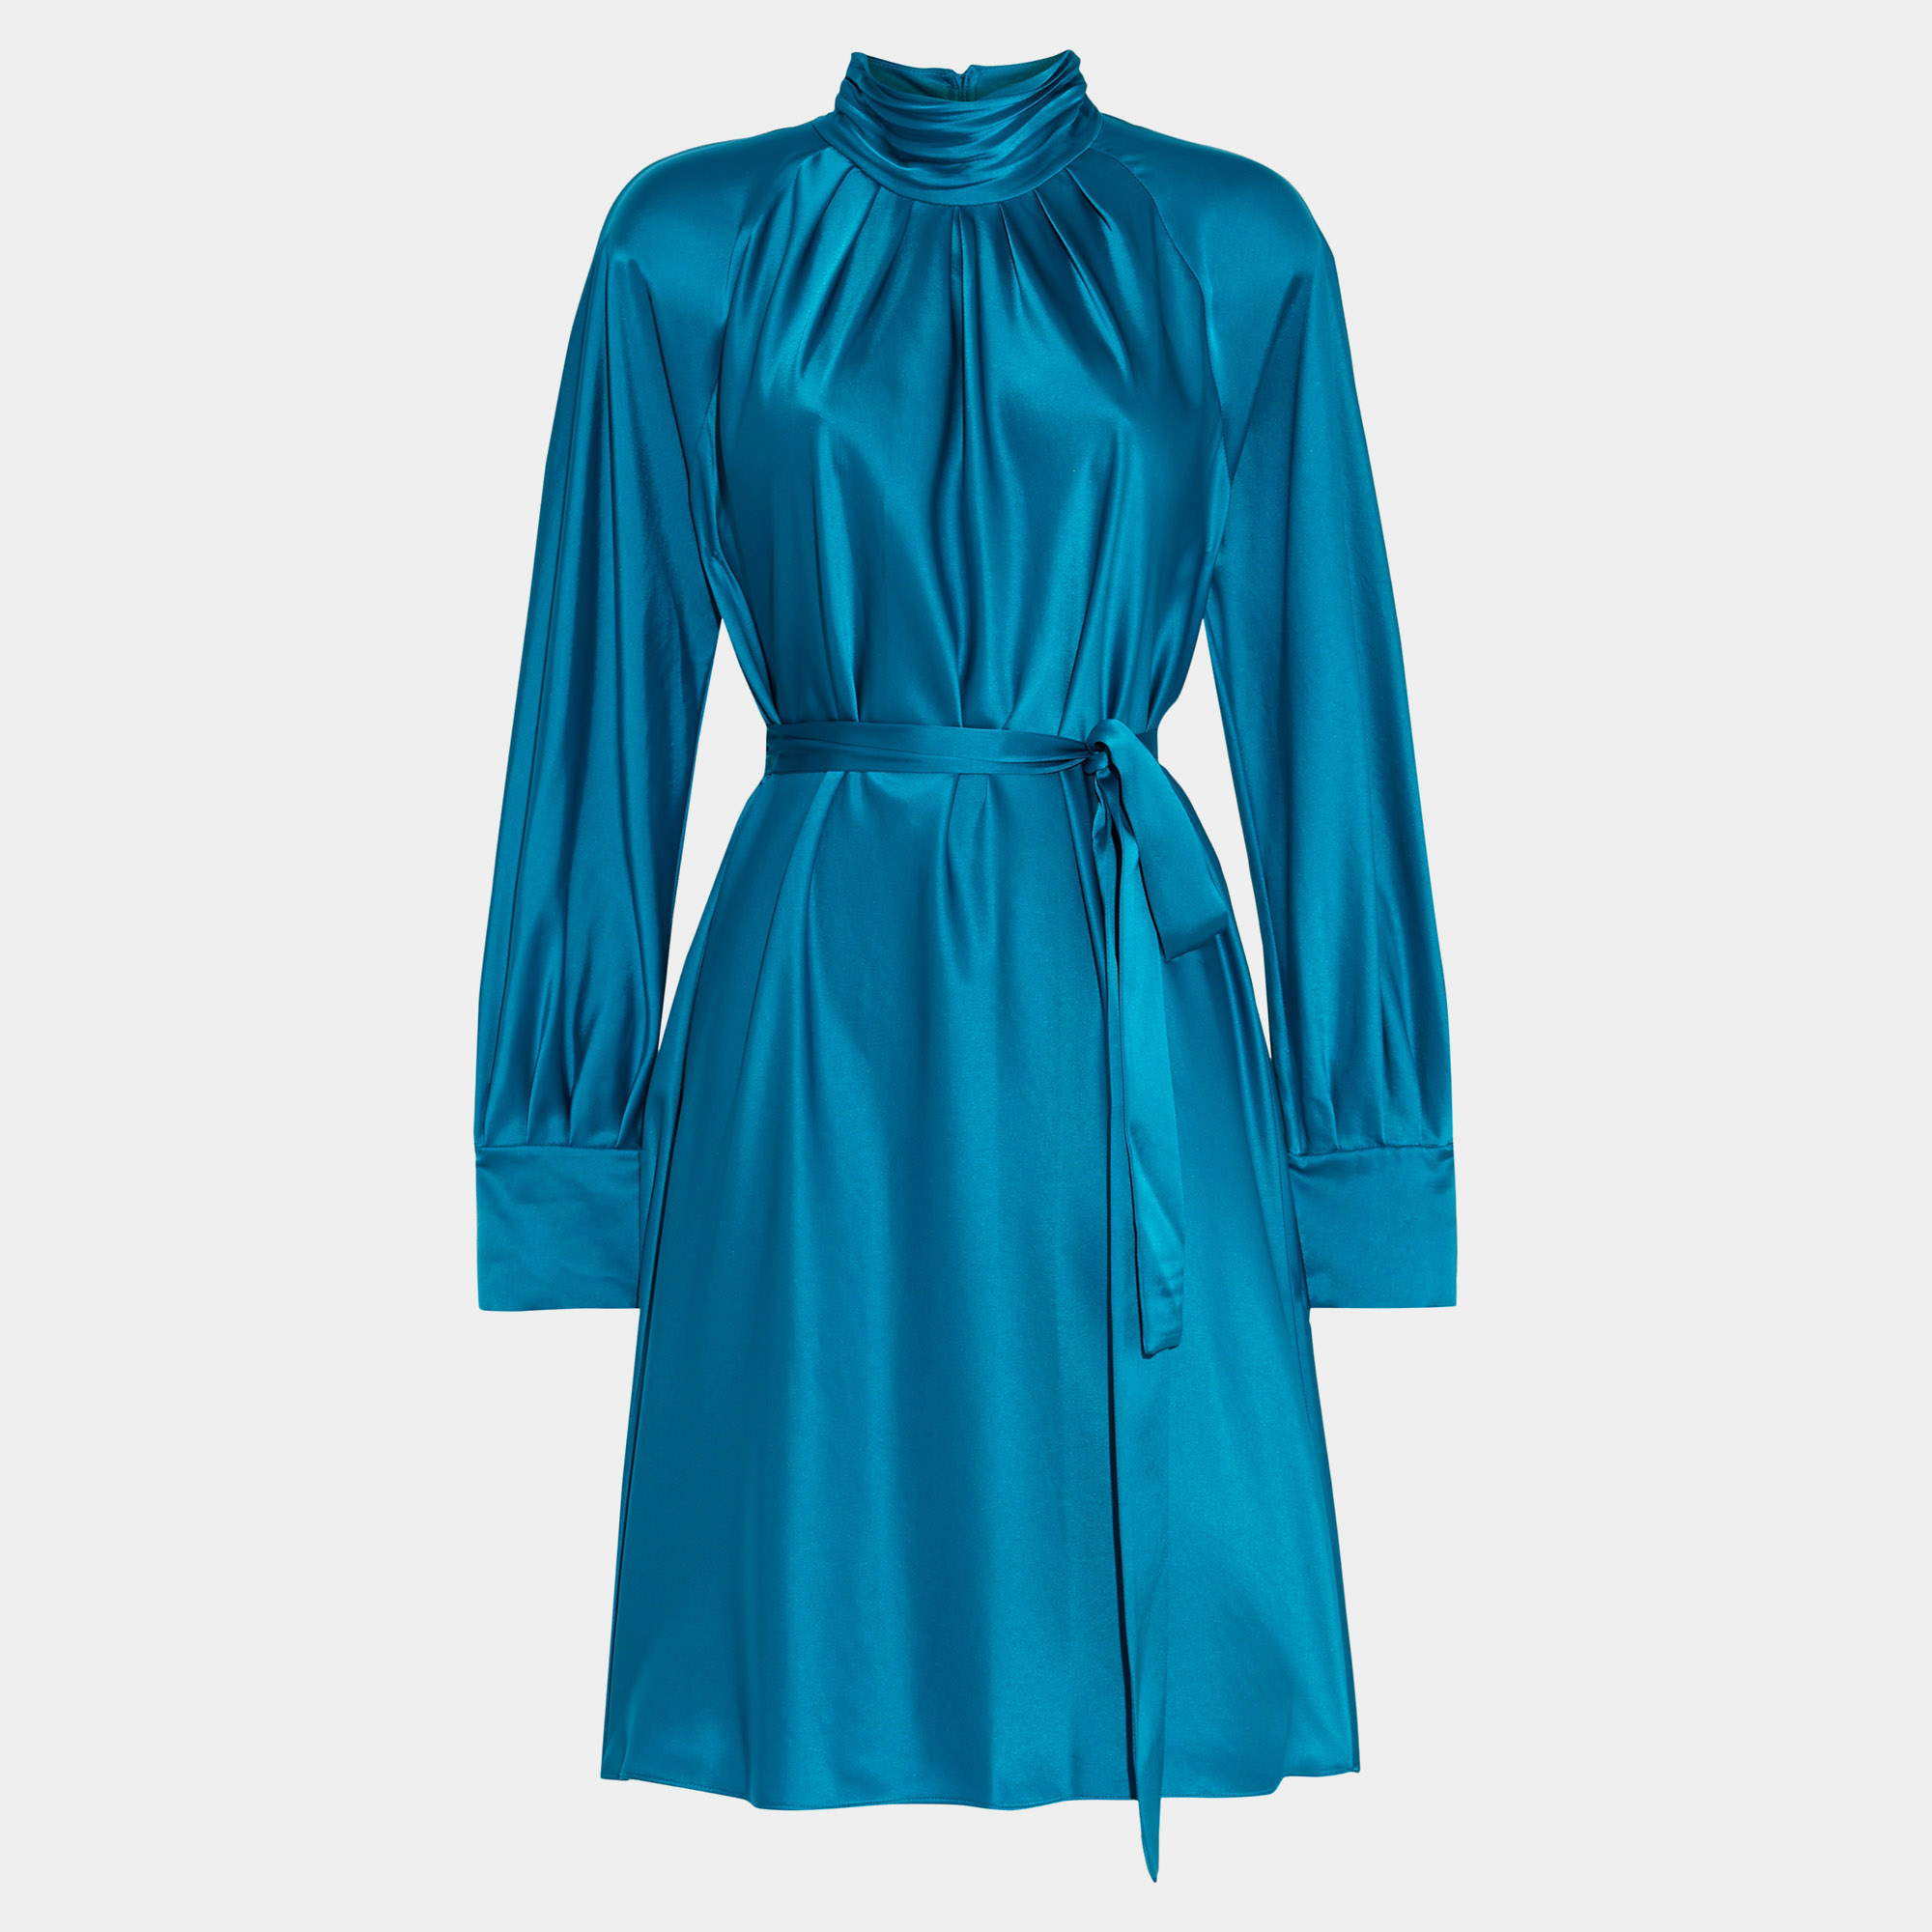 Diane von furstenberg blue satin veda belted dress m